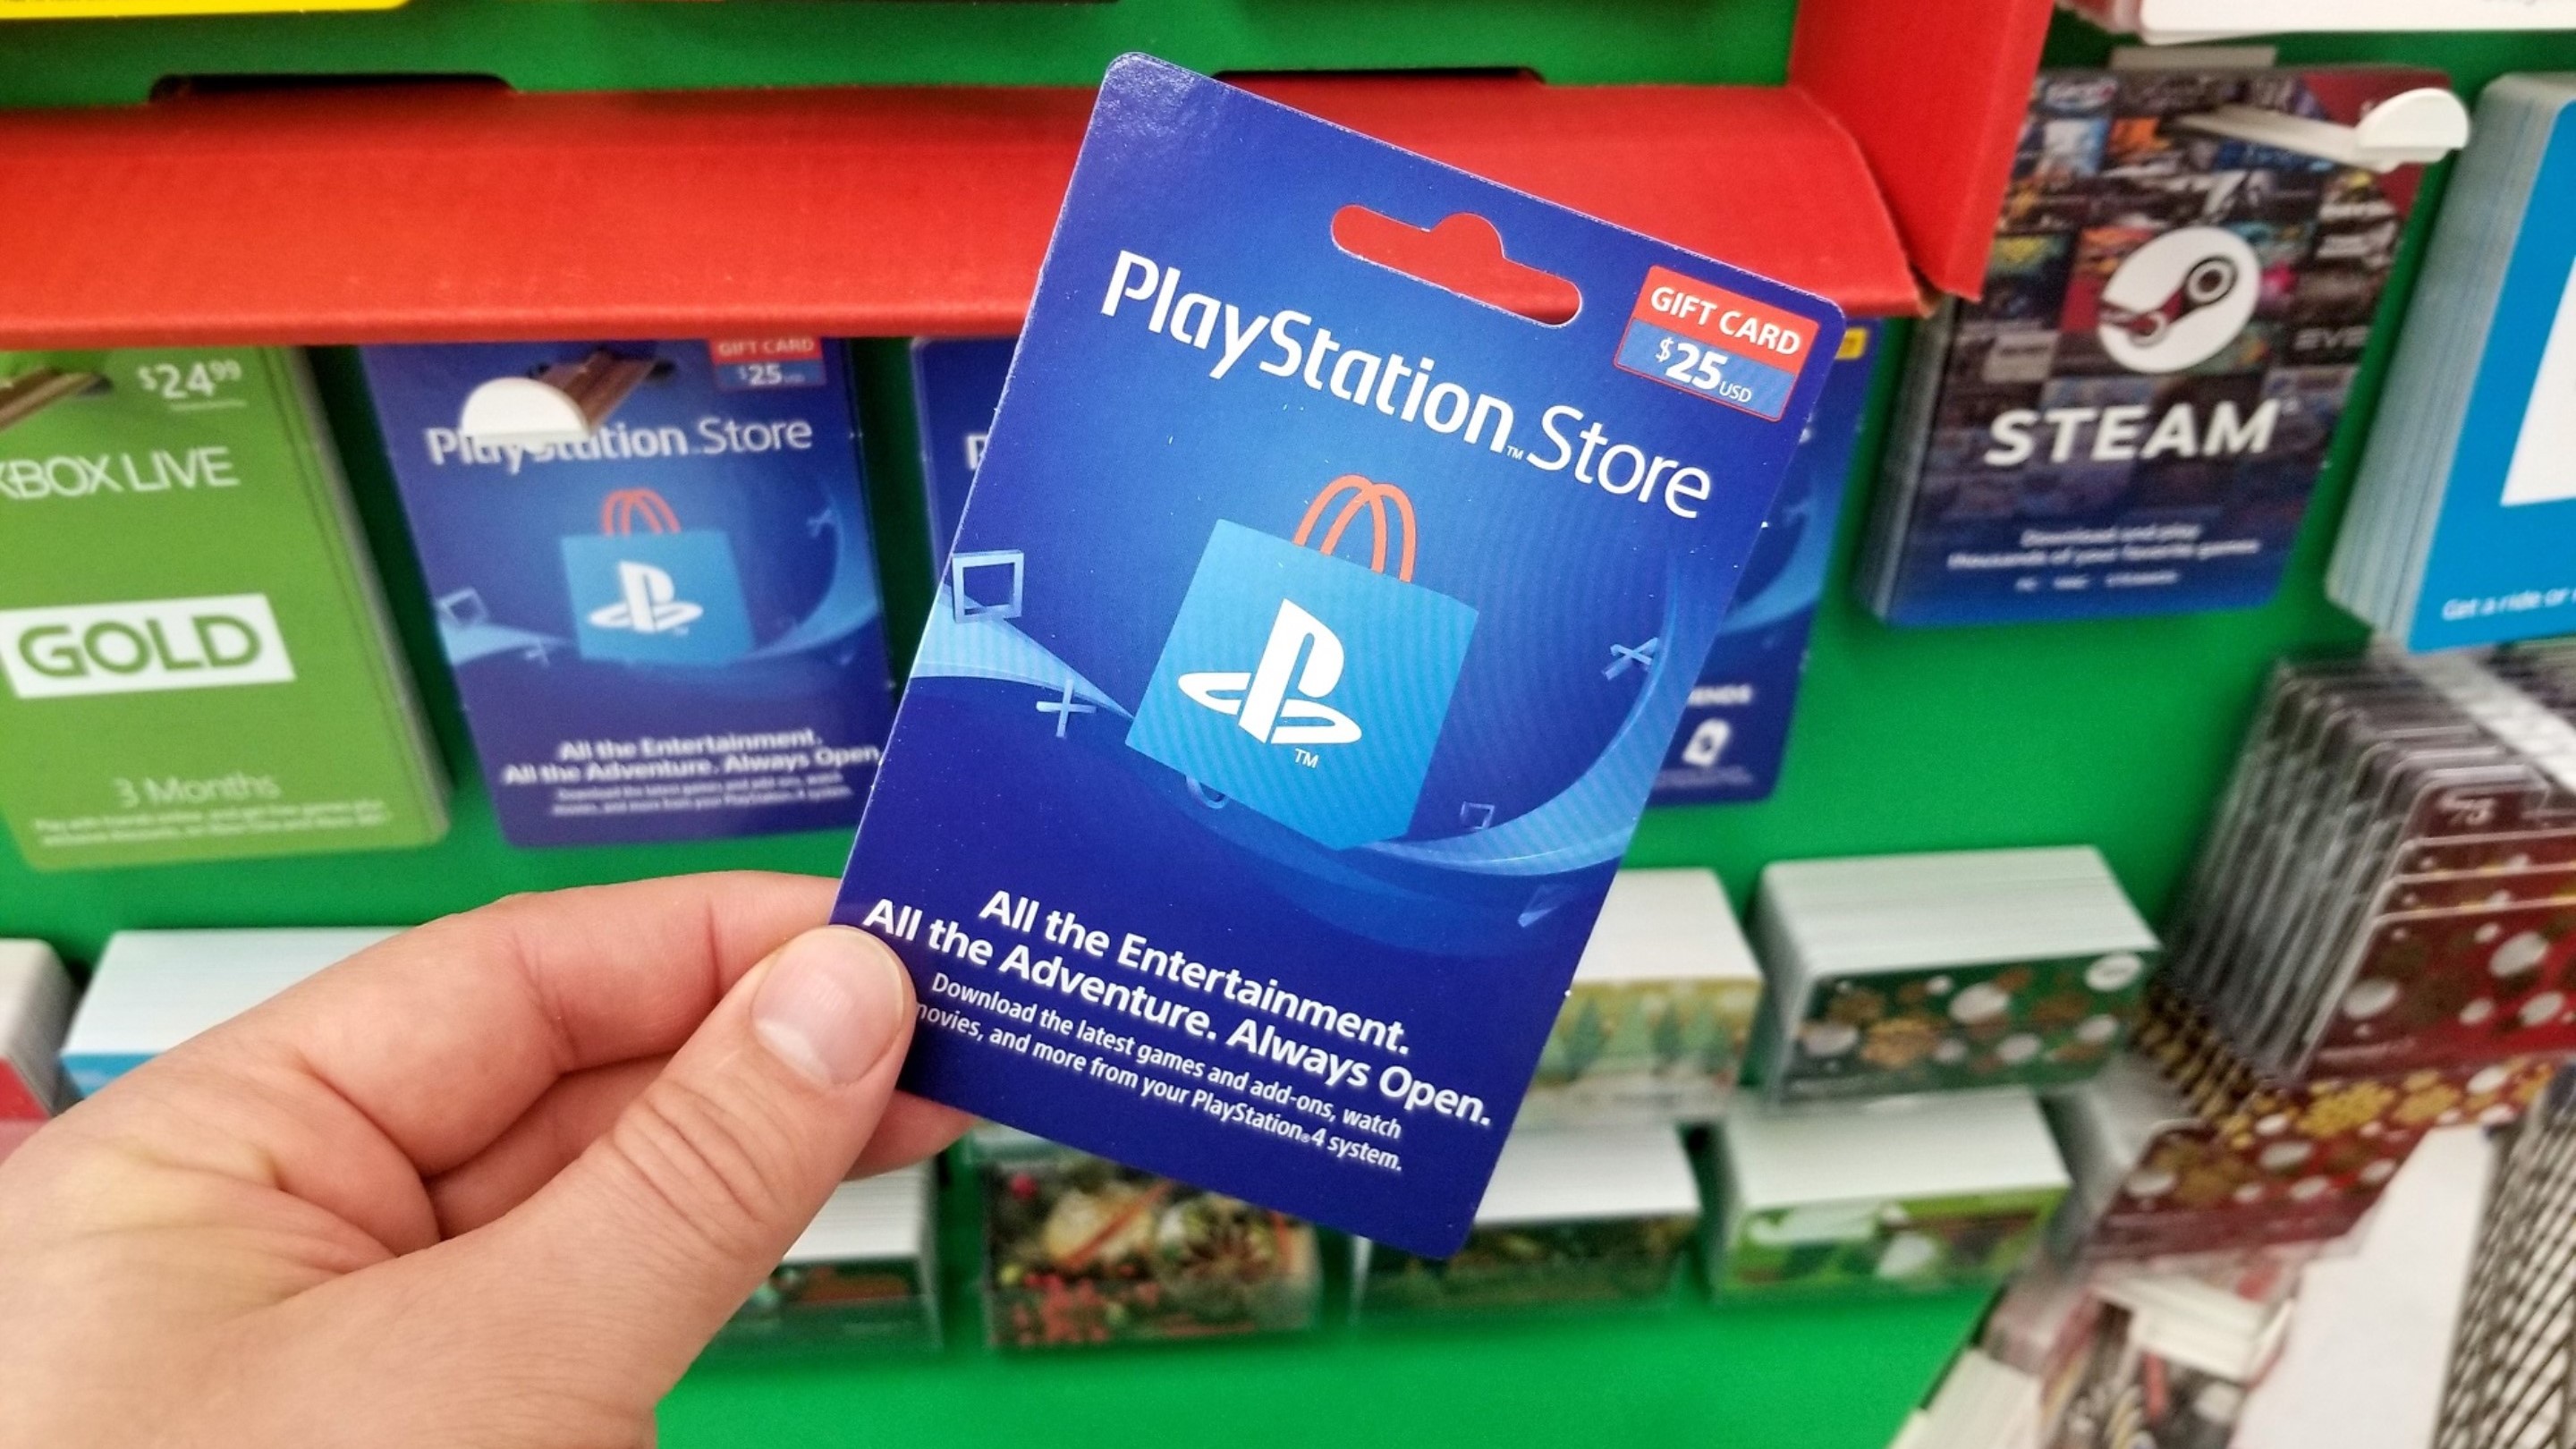 Qué ventajas tiene la tarjeta PlayStation frente a otras tarjetas de débito  para gamers?